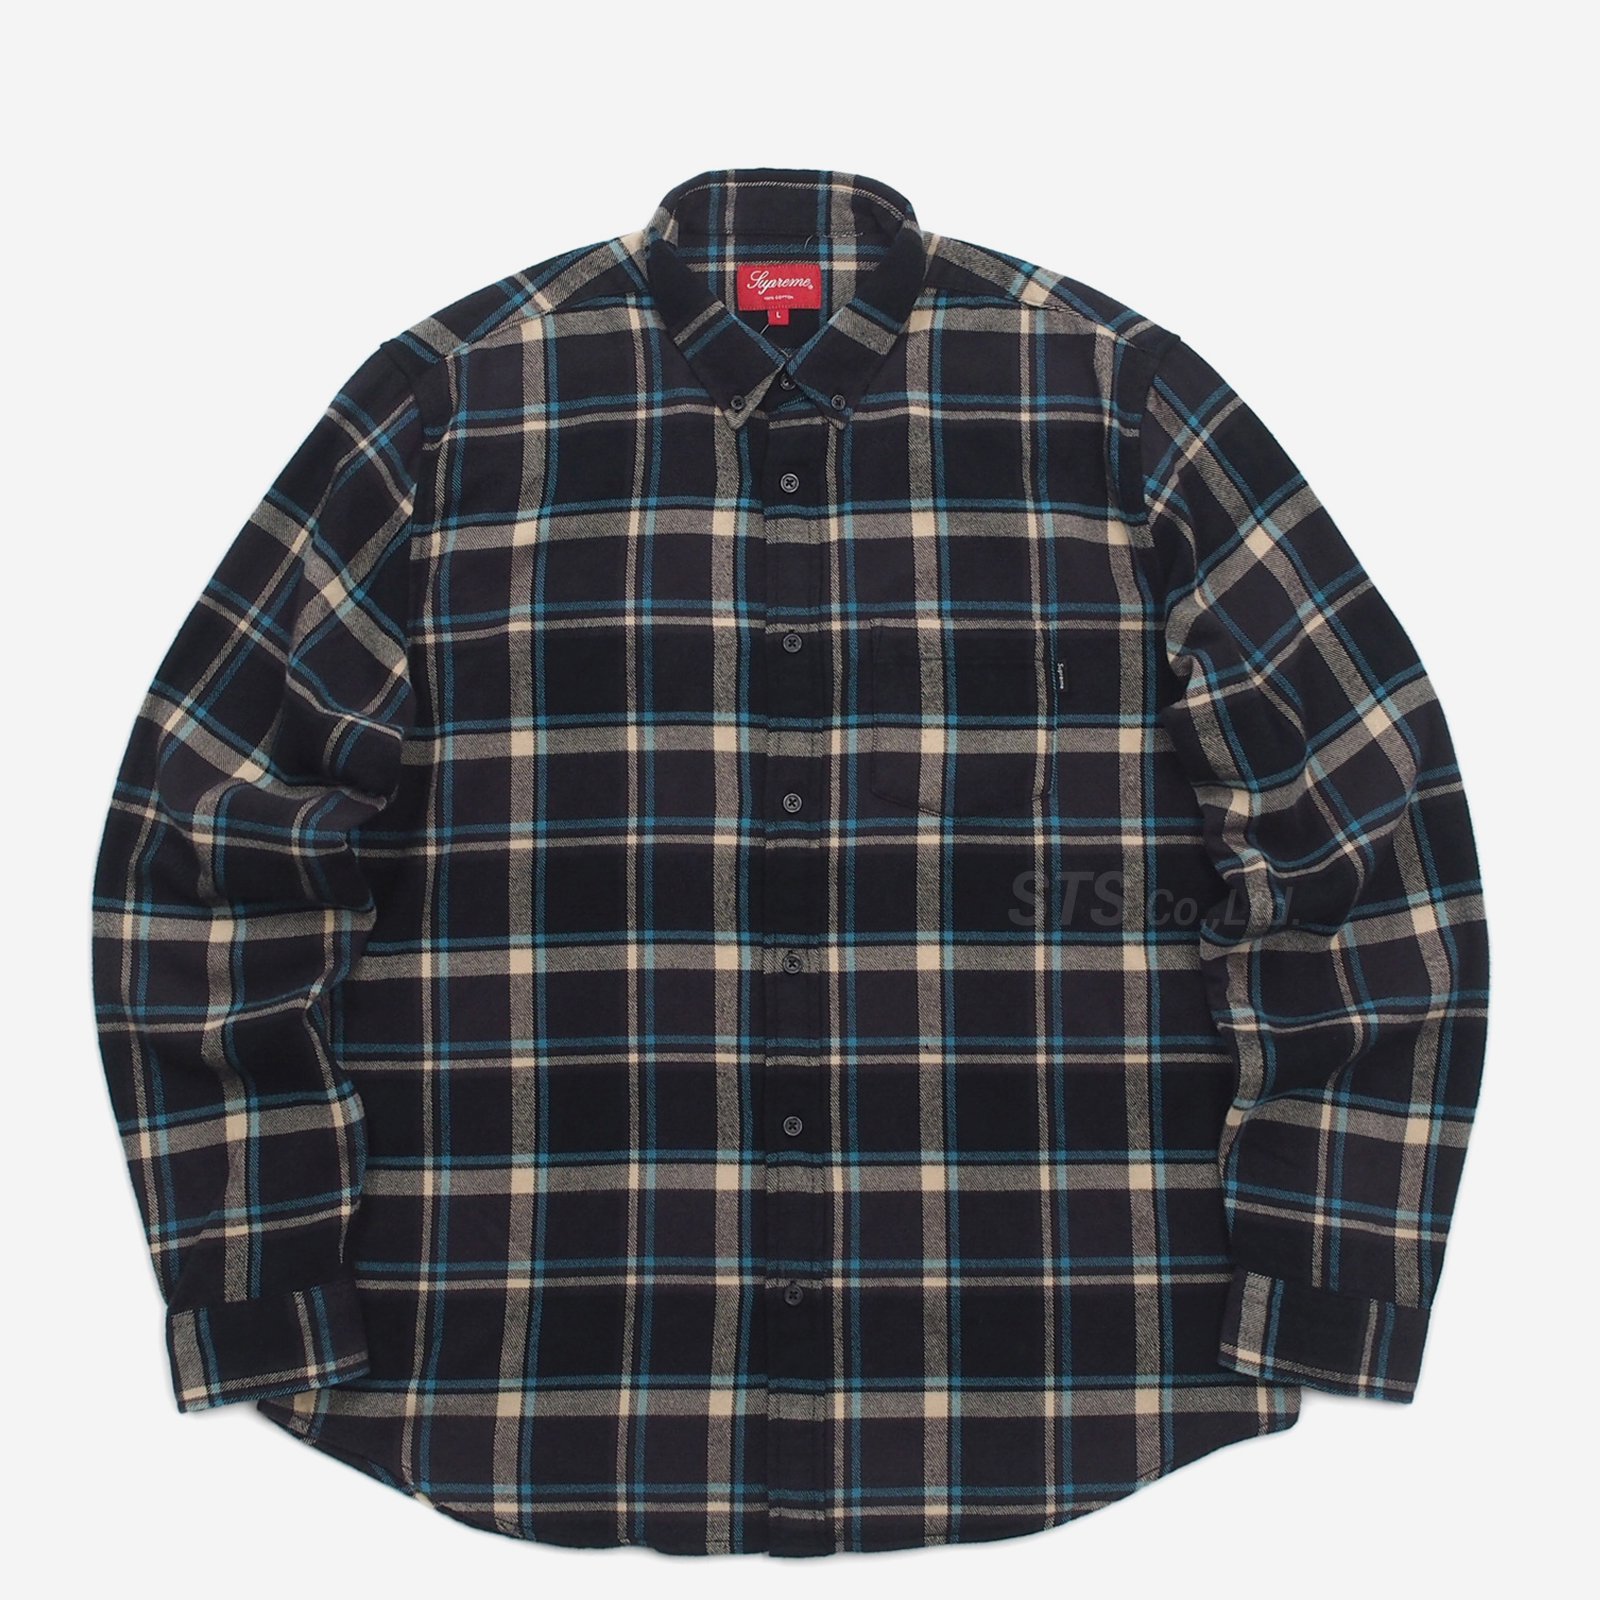 【L】Supreme Plaid Flannel Shirt